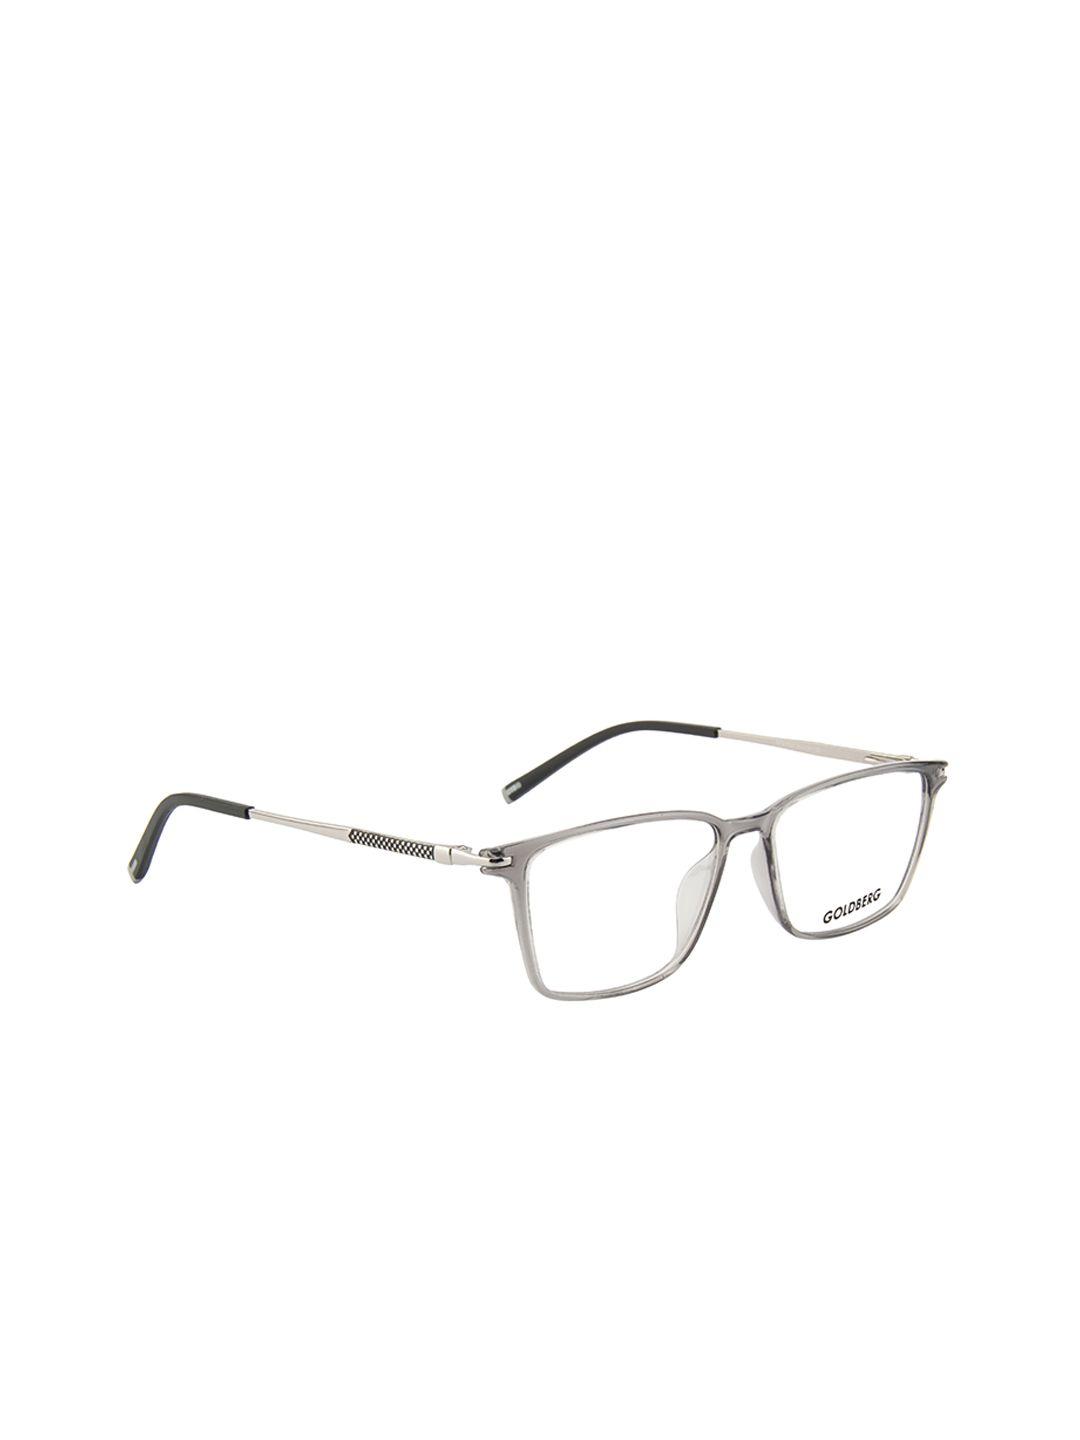 gold berg unisex grey solid full rim wayfarer frames eyeglasses